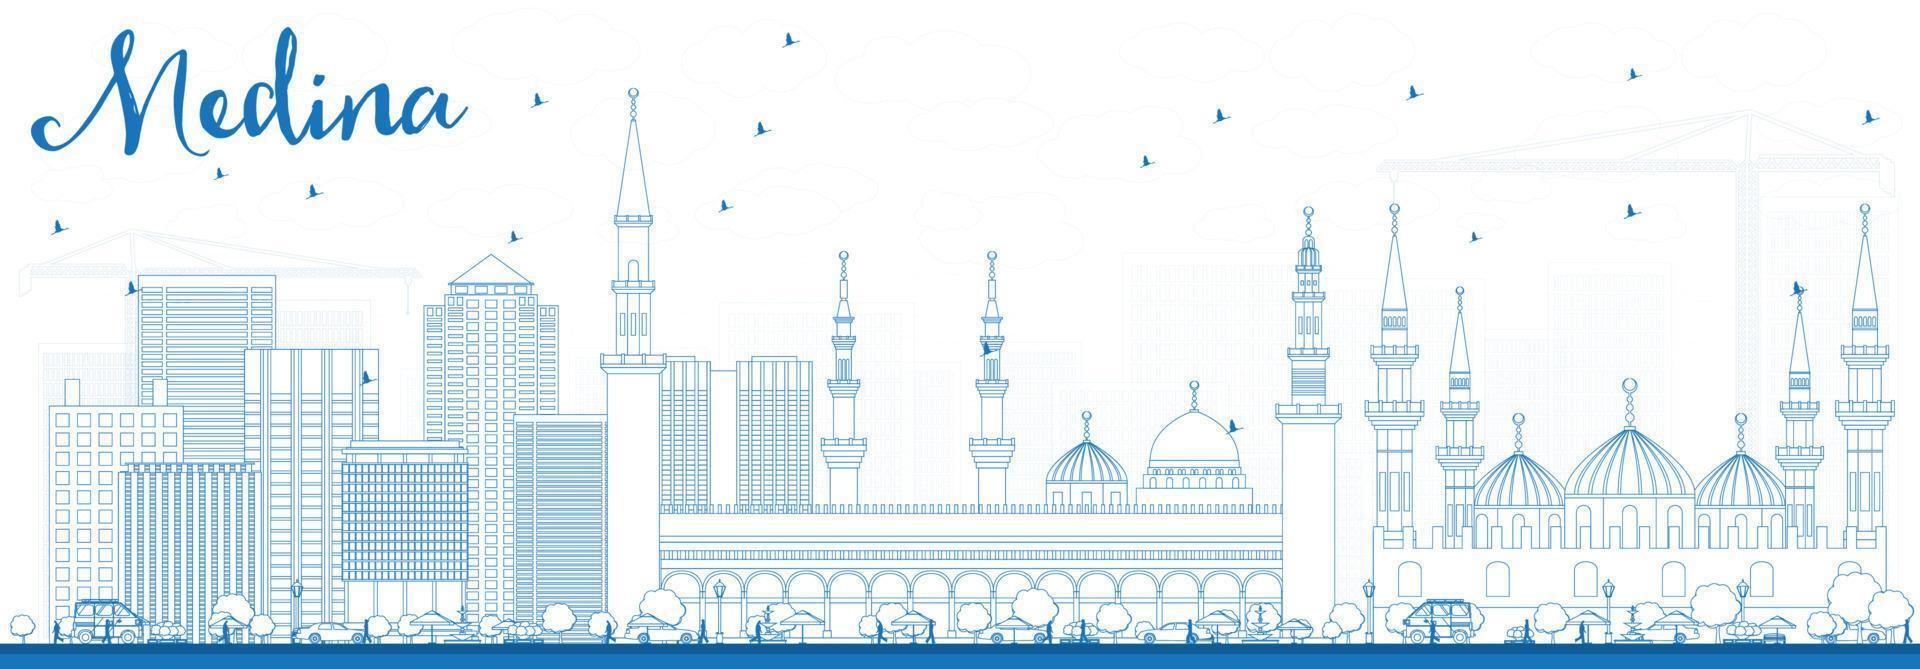 delinear o horizonte da medina com edifícios azuis. vetor